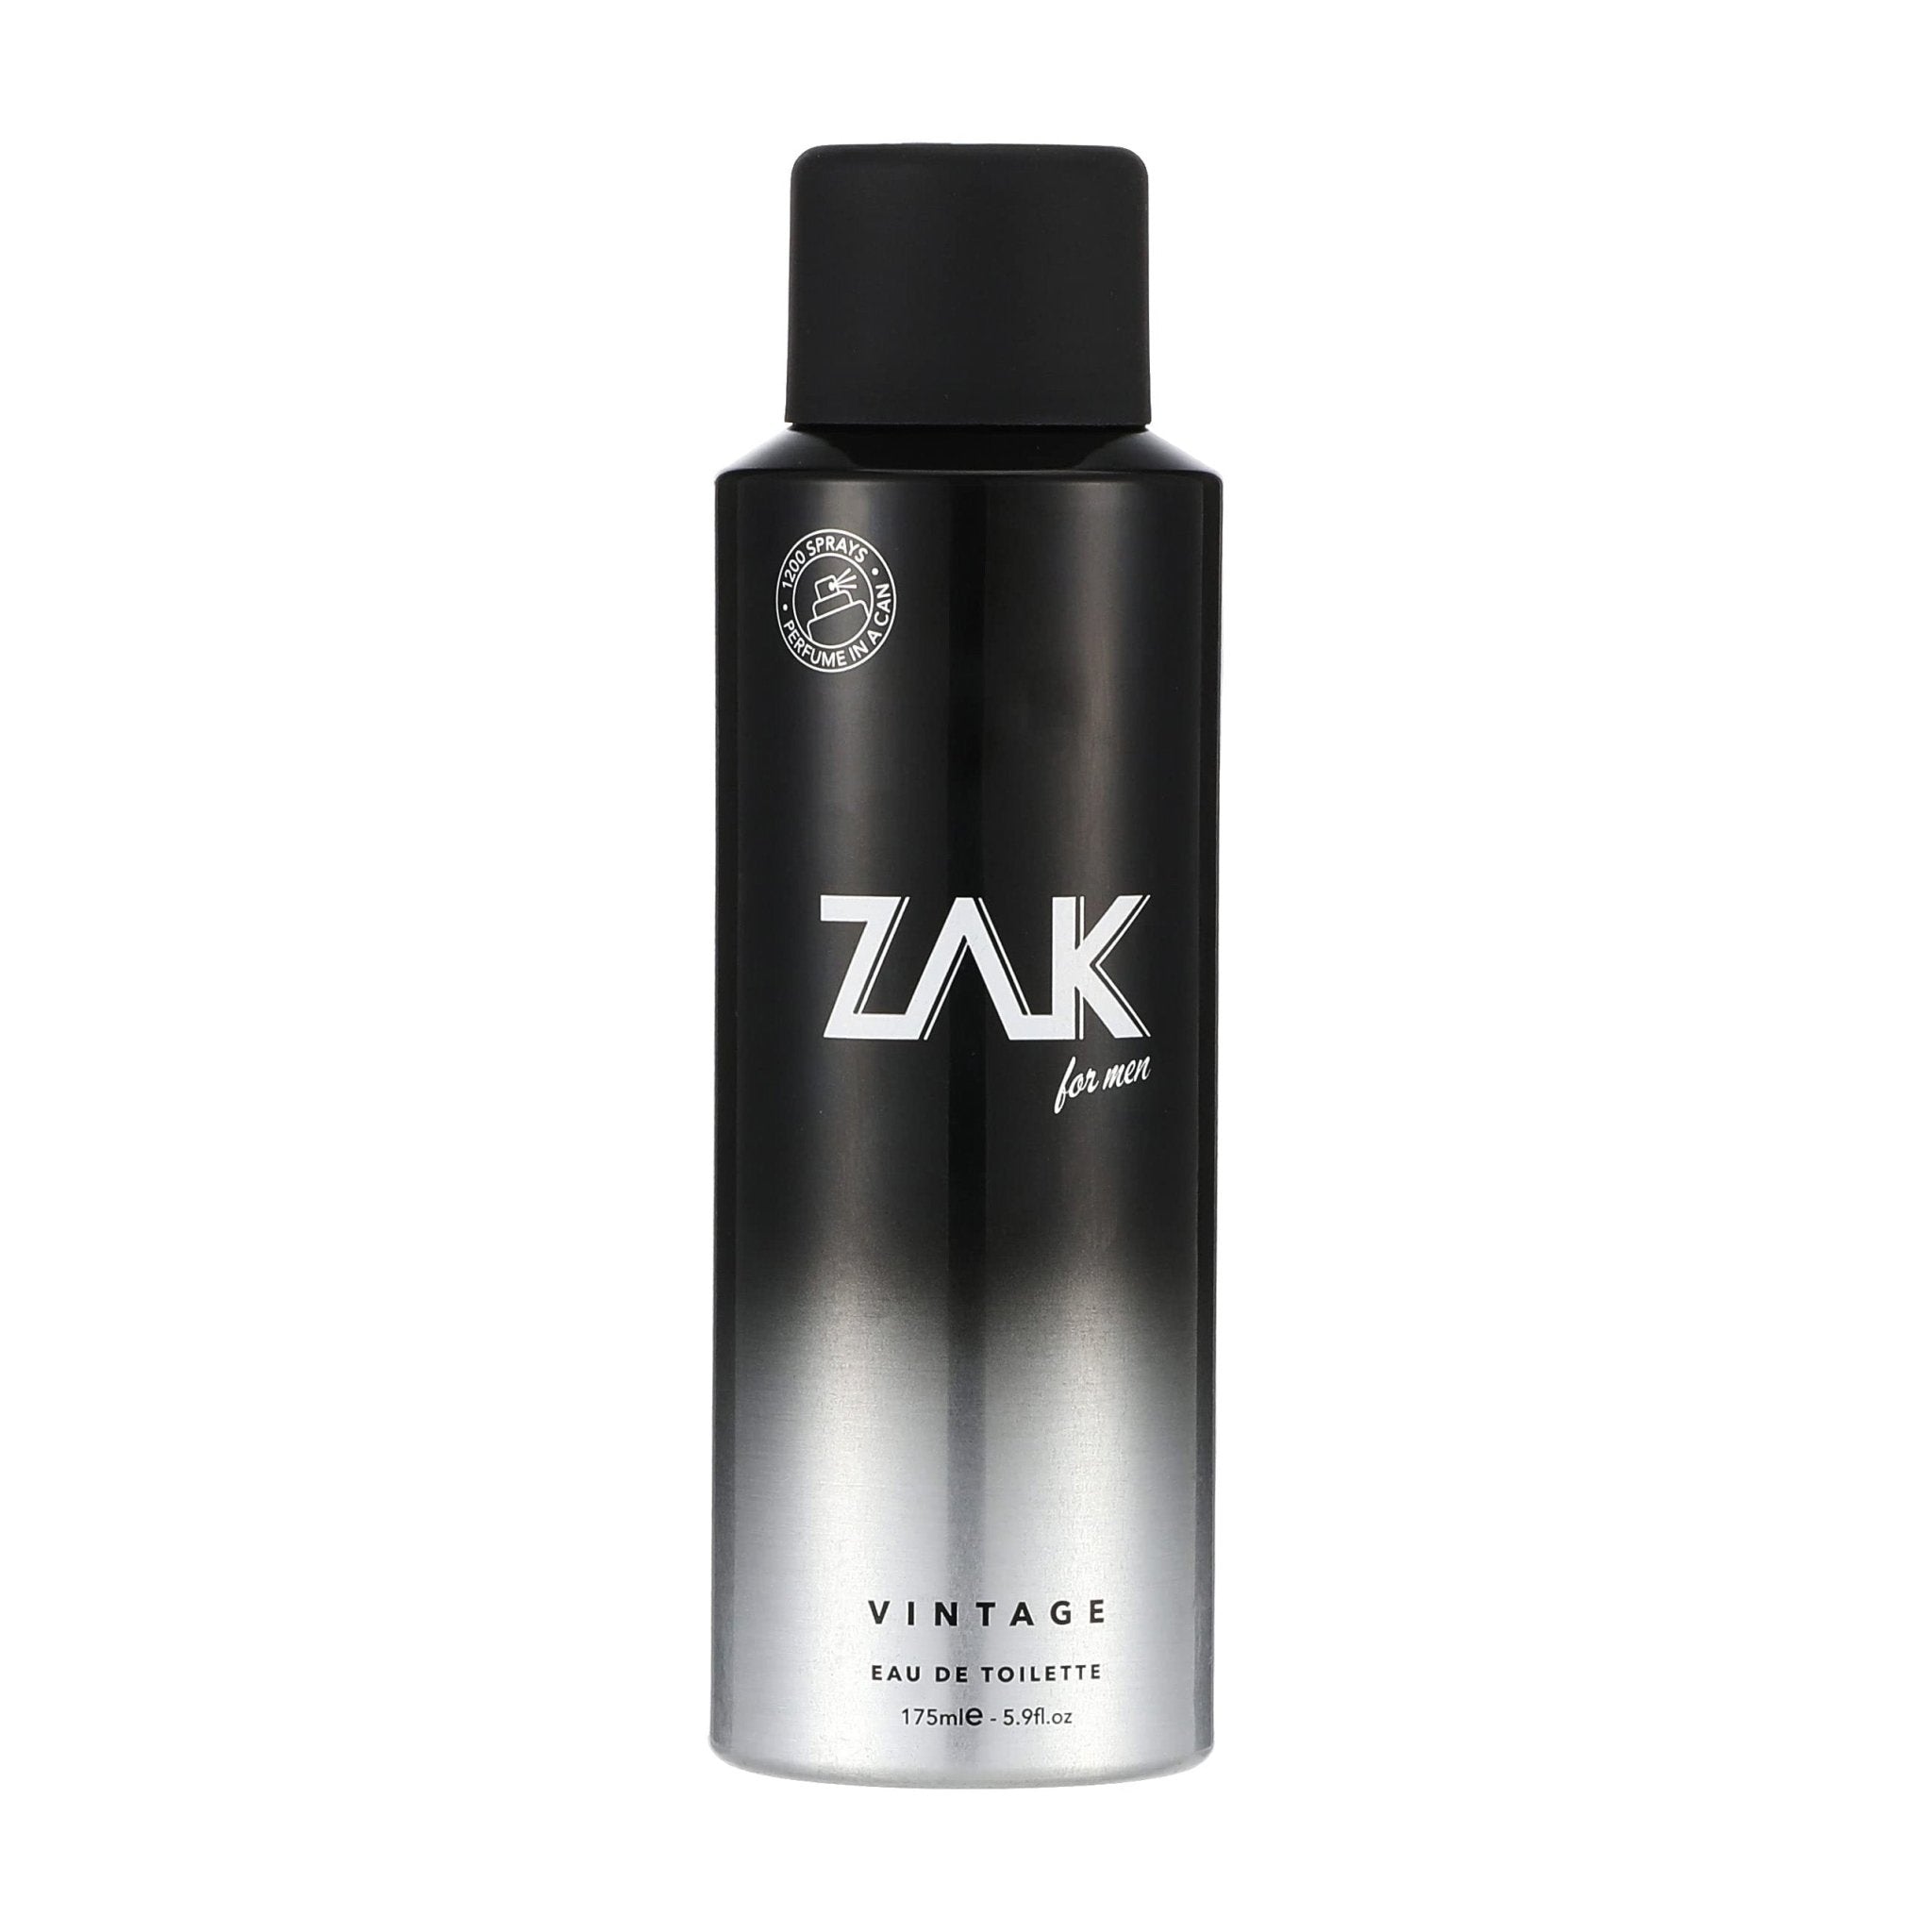 Zak For Men Vintage EDT Fragrance Spray – 175ml - Bloom Pharmacy